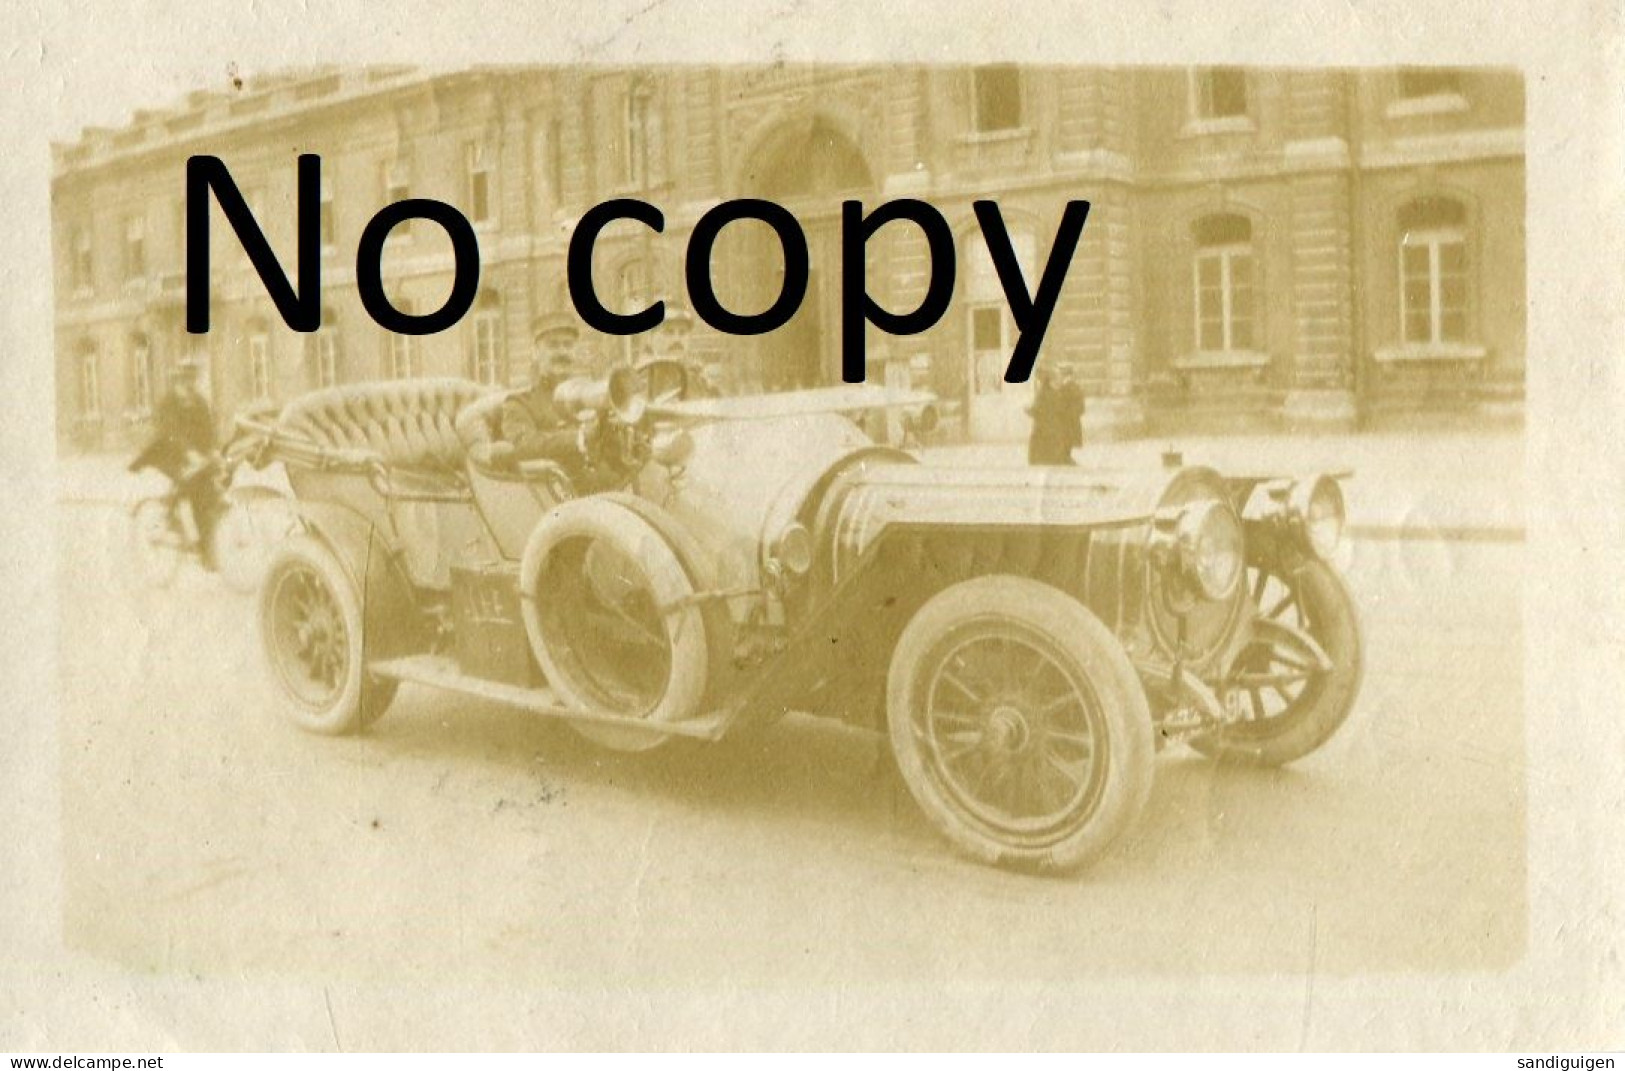 PHOTO FRANCAISE - A LYON RHONE - OFFICIERS EN AUTOMOBILE PARTANT POUR LE REGIMENT LE 2 AOUT 1914 - GUERRE 1914 1918 - Guerre, Militaire